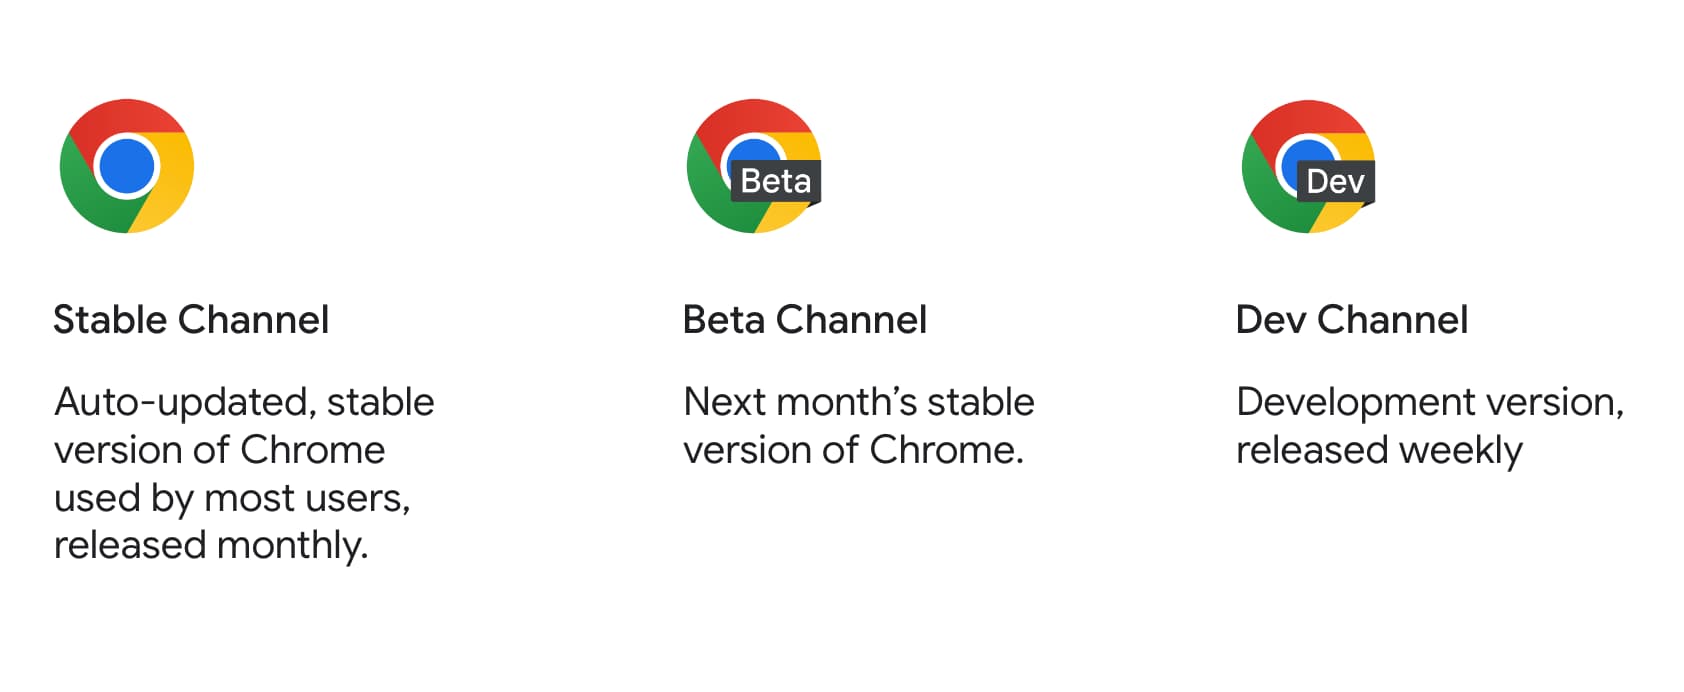 סמלי המוצרים של הגרסה היציבה, הבטא והפיתוח של Chrome, יחד עם התיאור שלהם.